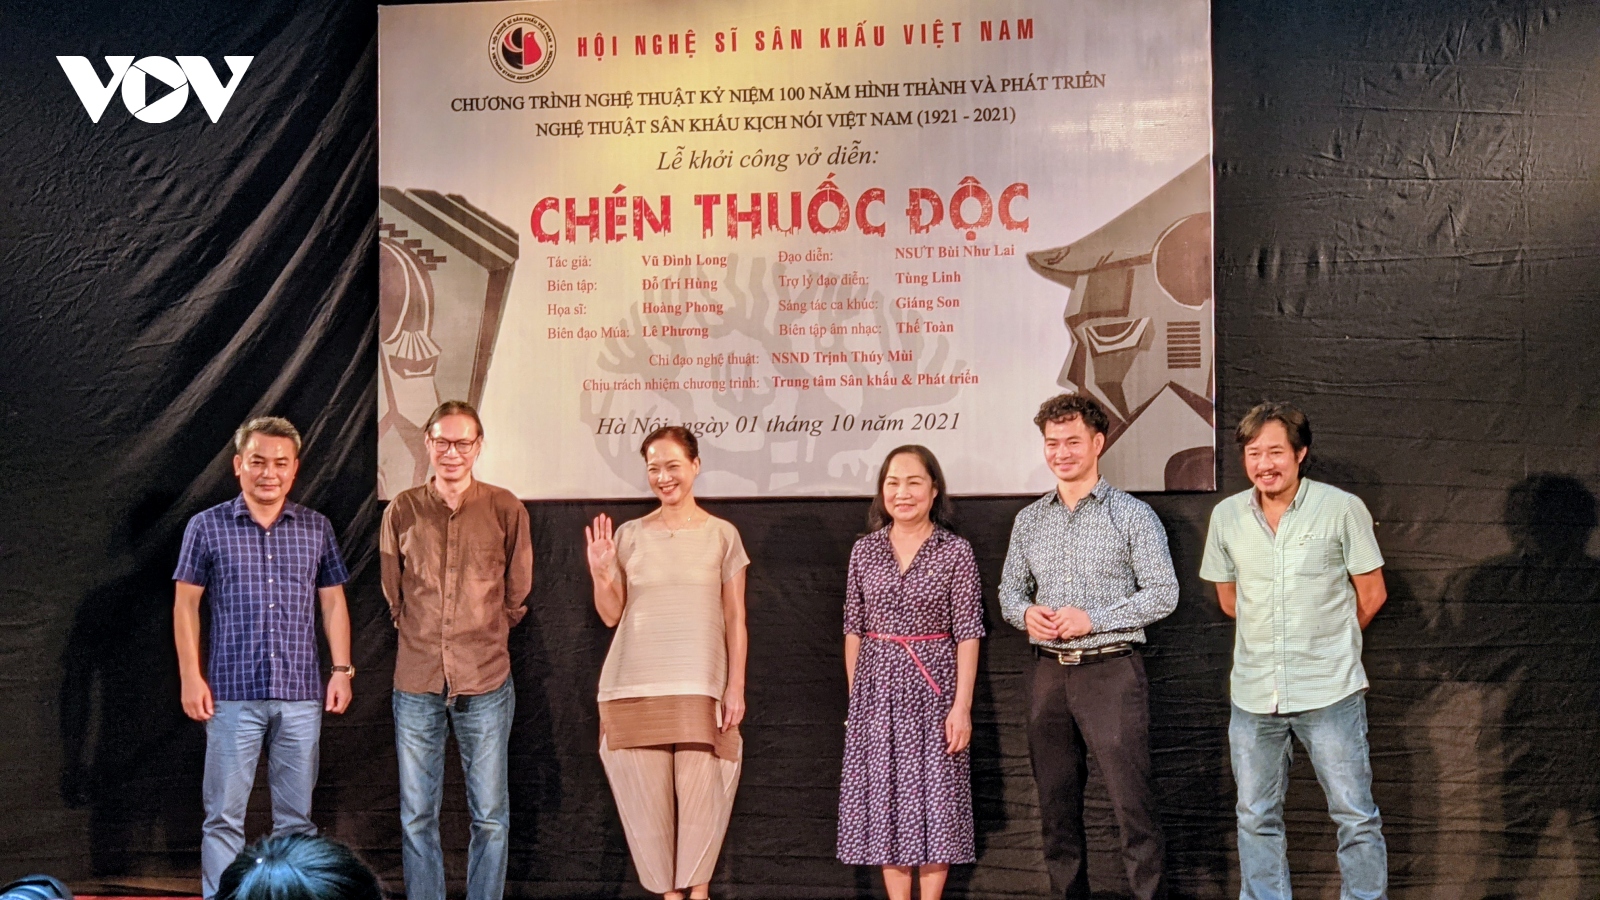 NSƯT Xuân Bắc xin diễn 1 giây trong vở kịch kỷ niệm 100 năm sân khấu kịch nói Việt Nam